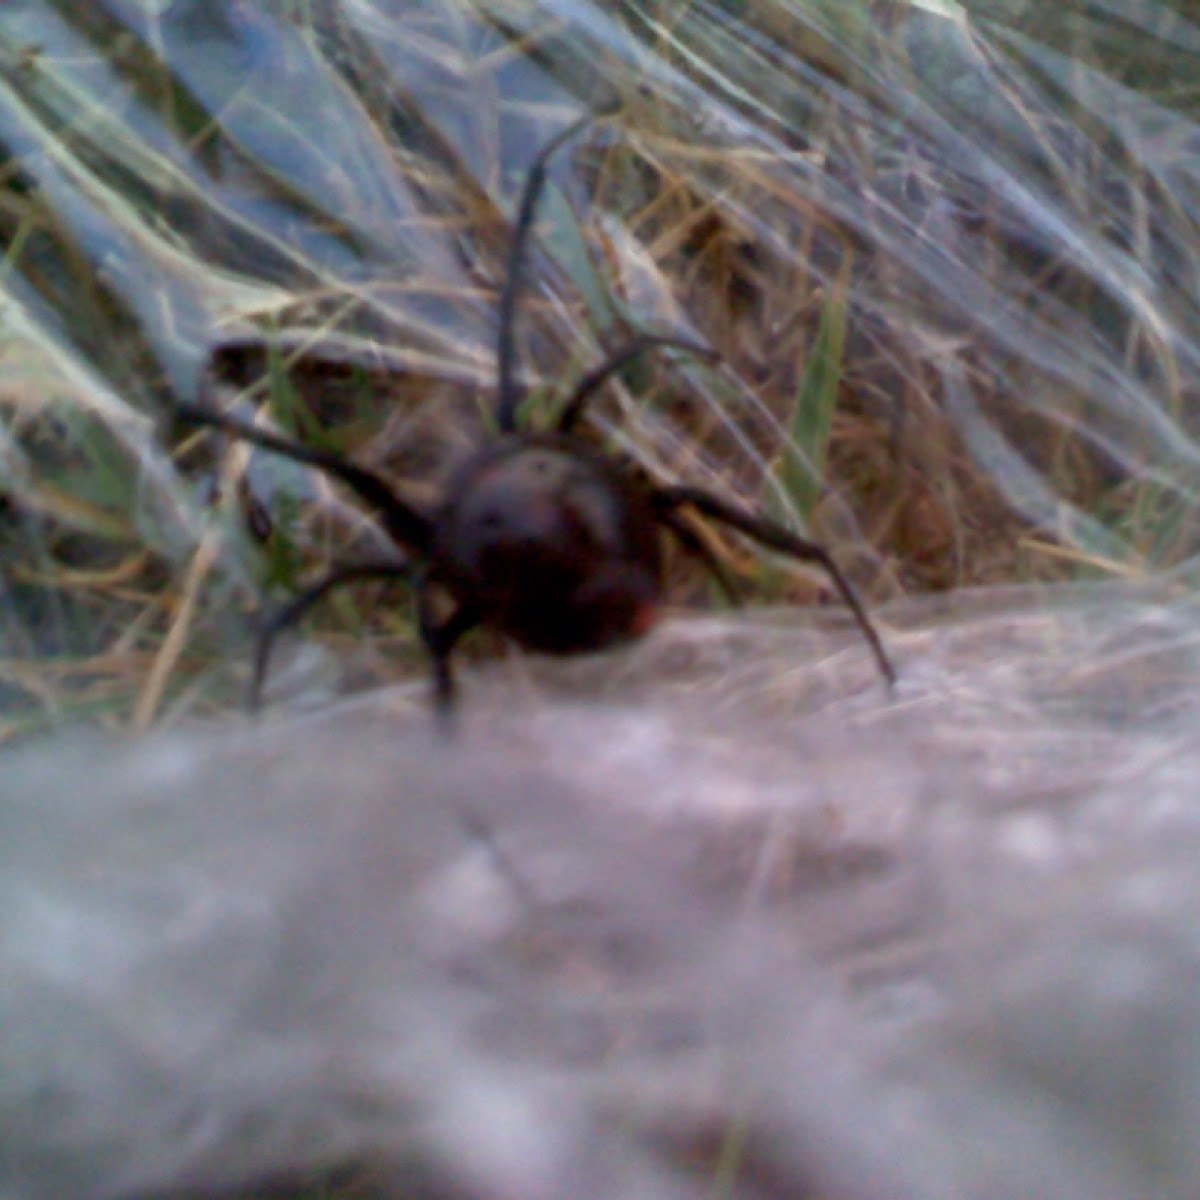 Eastern black widow spider